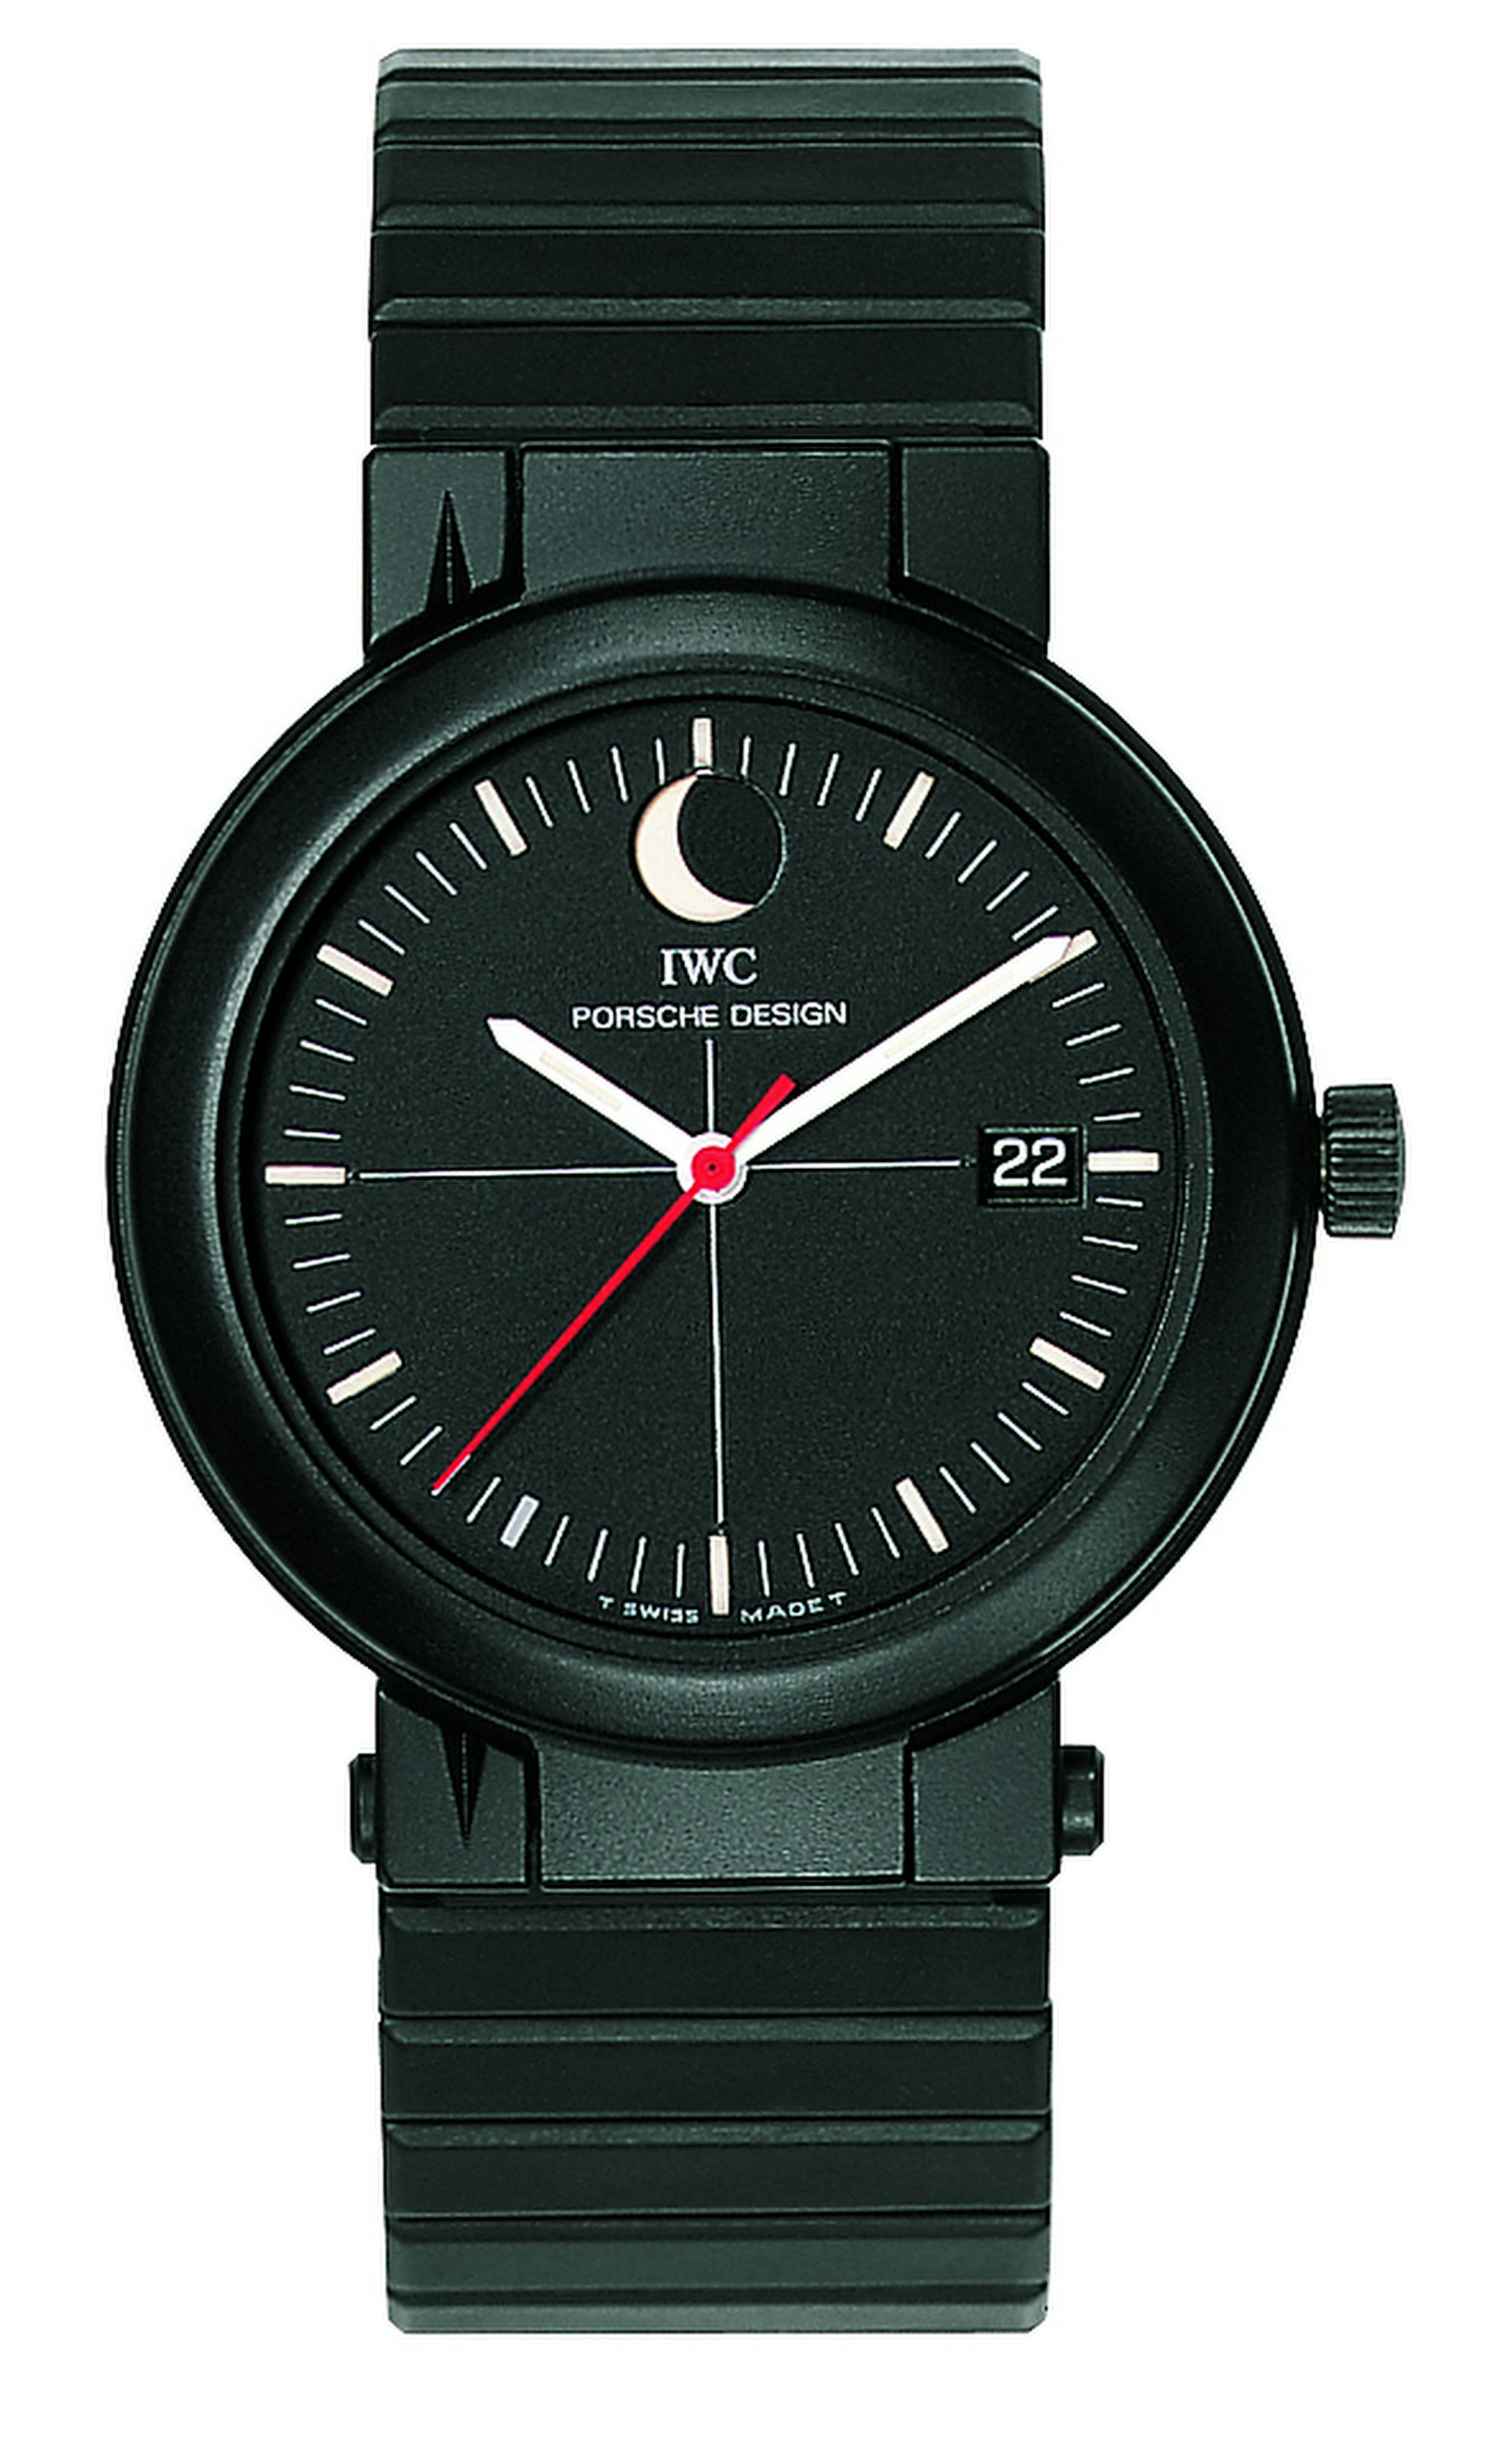 IWC Porsche Design Compass Watch Moonphase